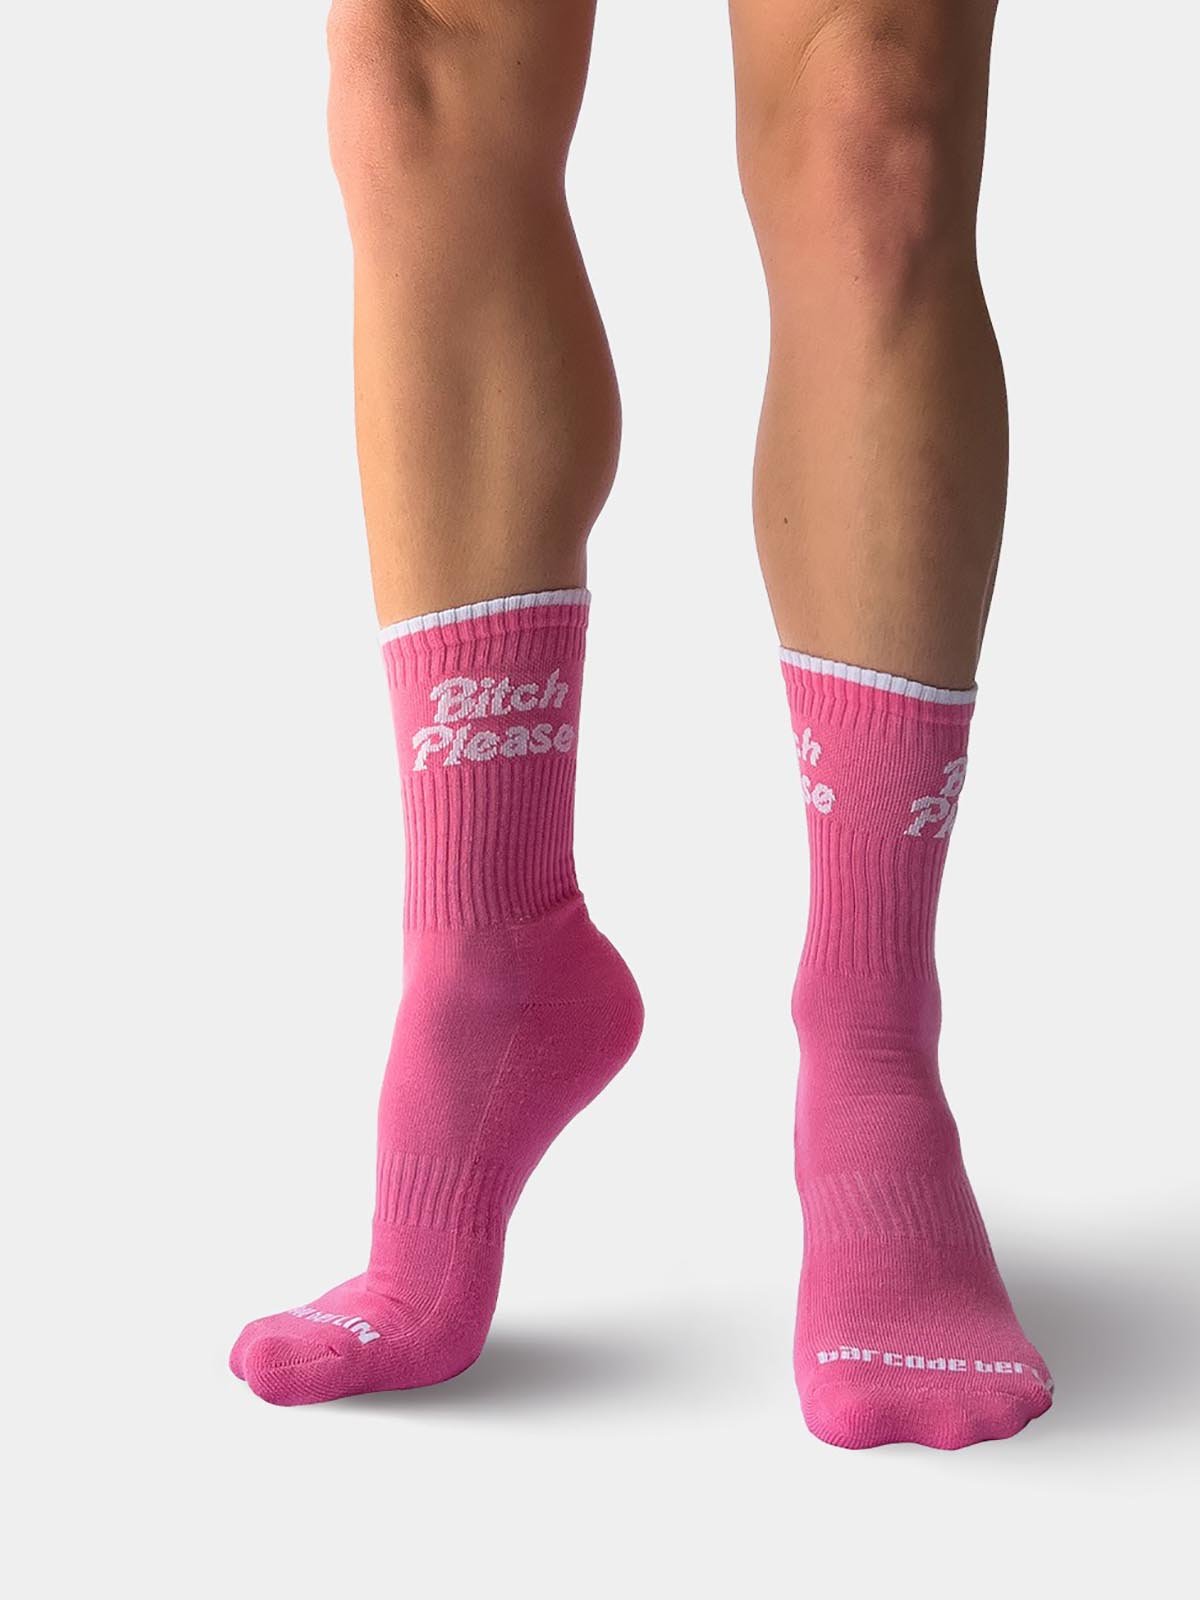 Fun Socks "Bitch Please" | Pink/White